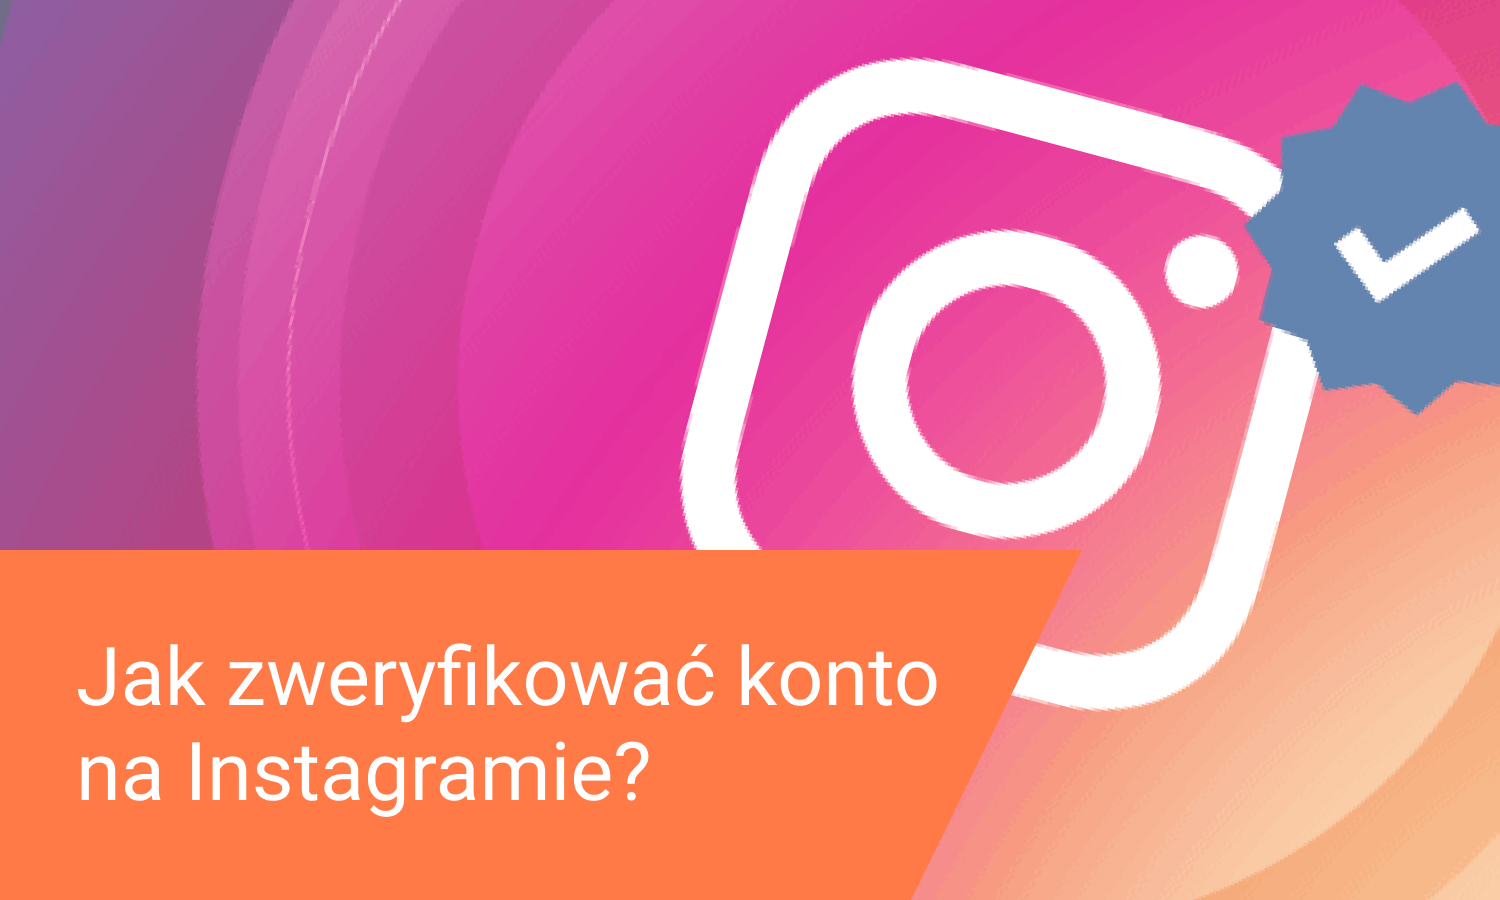 Jak zweryfikować konto na Instagramie